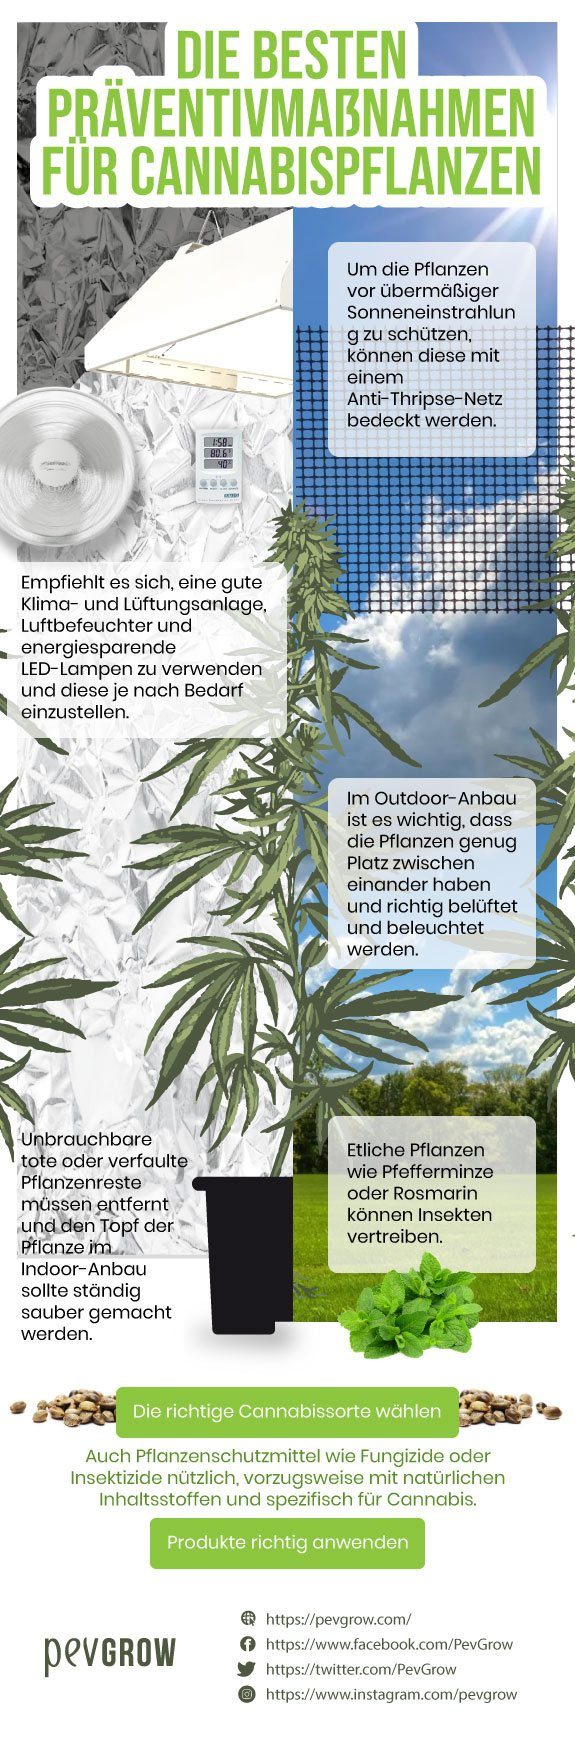 Die 5 besten Präventivmaßnahmen für Cannabispflanzen